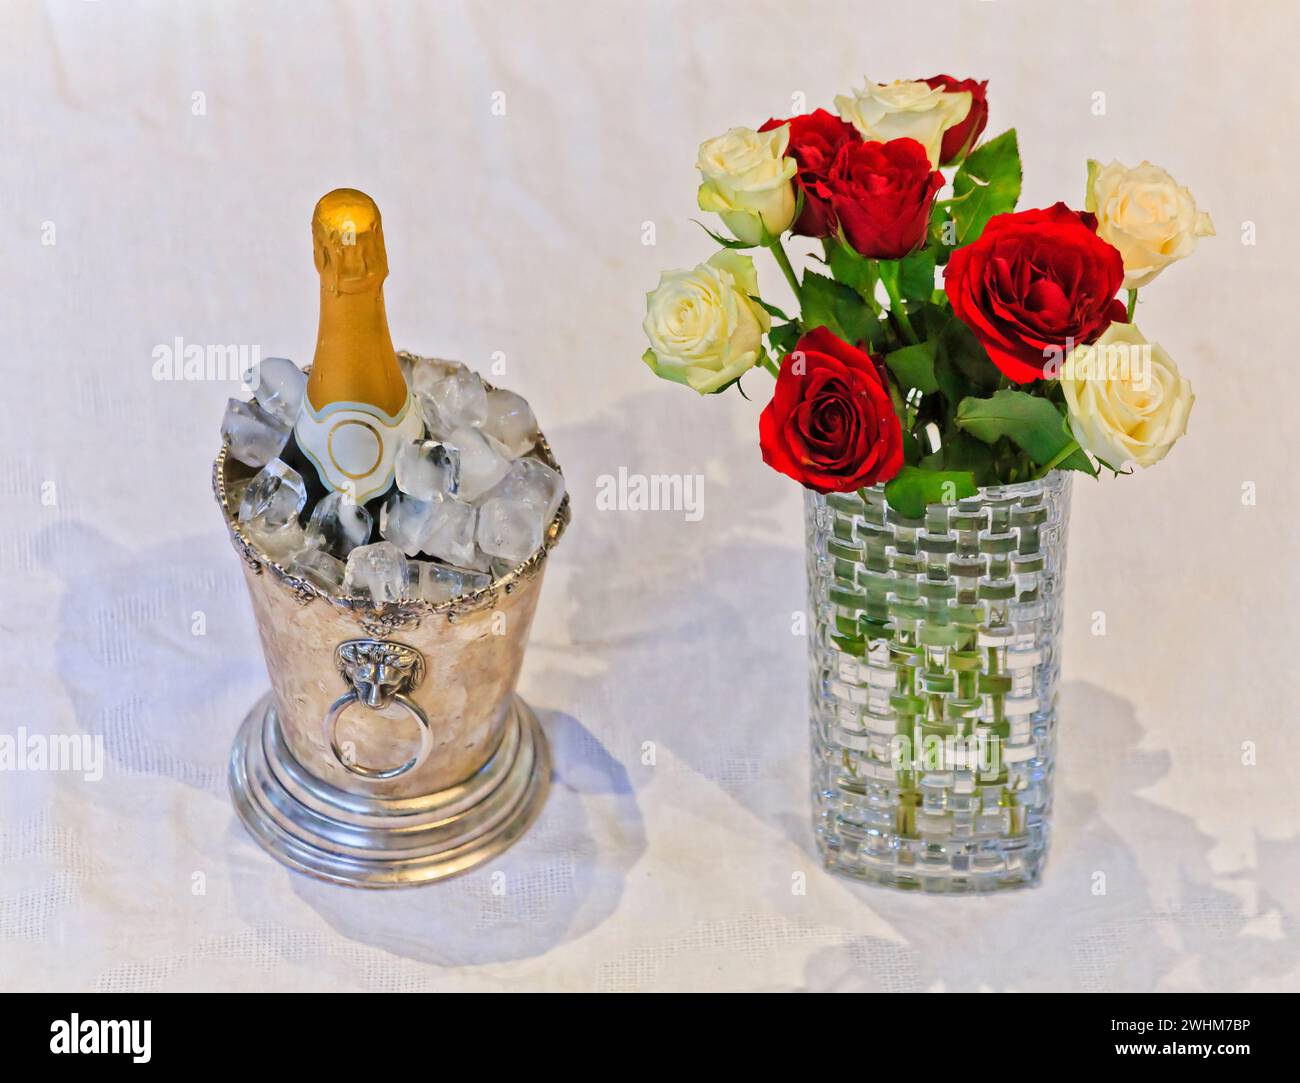 Style de vie de luxe avec une bouteille de vin blanc mousseux dans un seau à glace et bouquet de fleurs dans un vase sur une nappe blanche. Banque D'Images